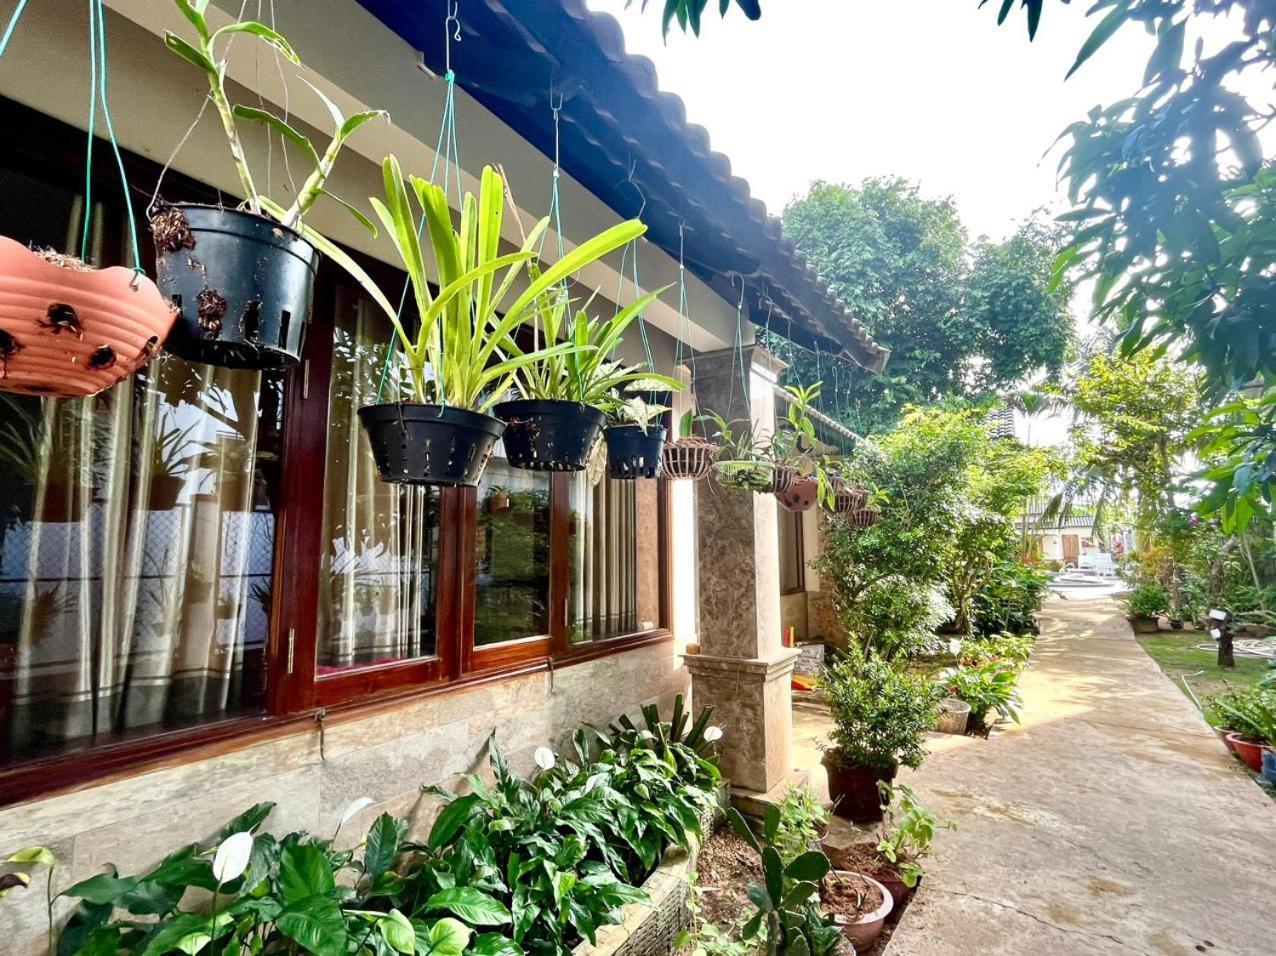 Nhat Huy Bungalow Phú Quốc Exterior foto